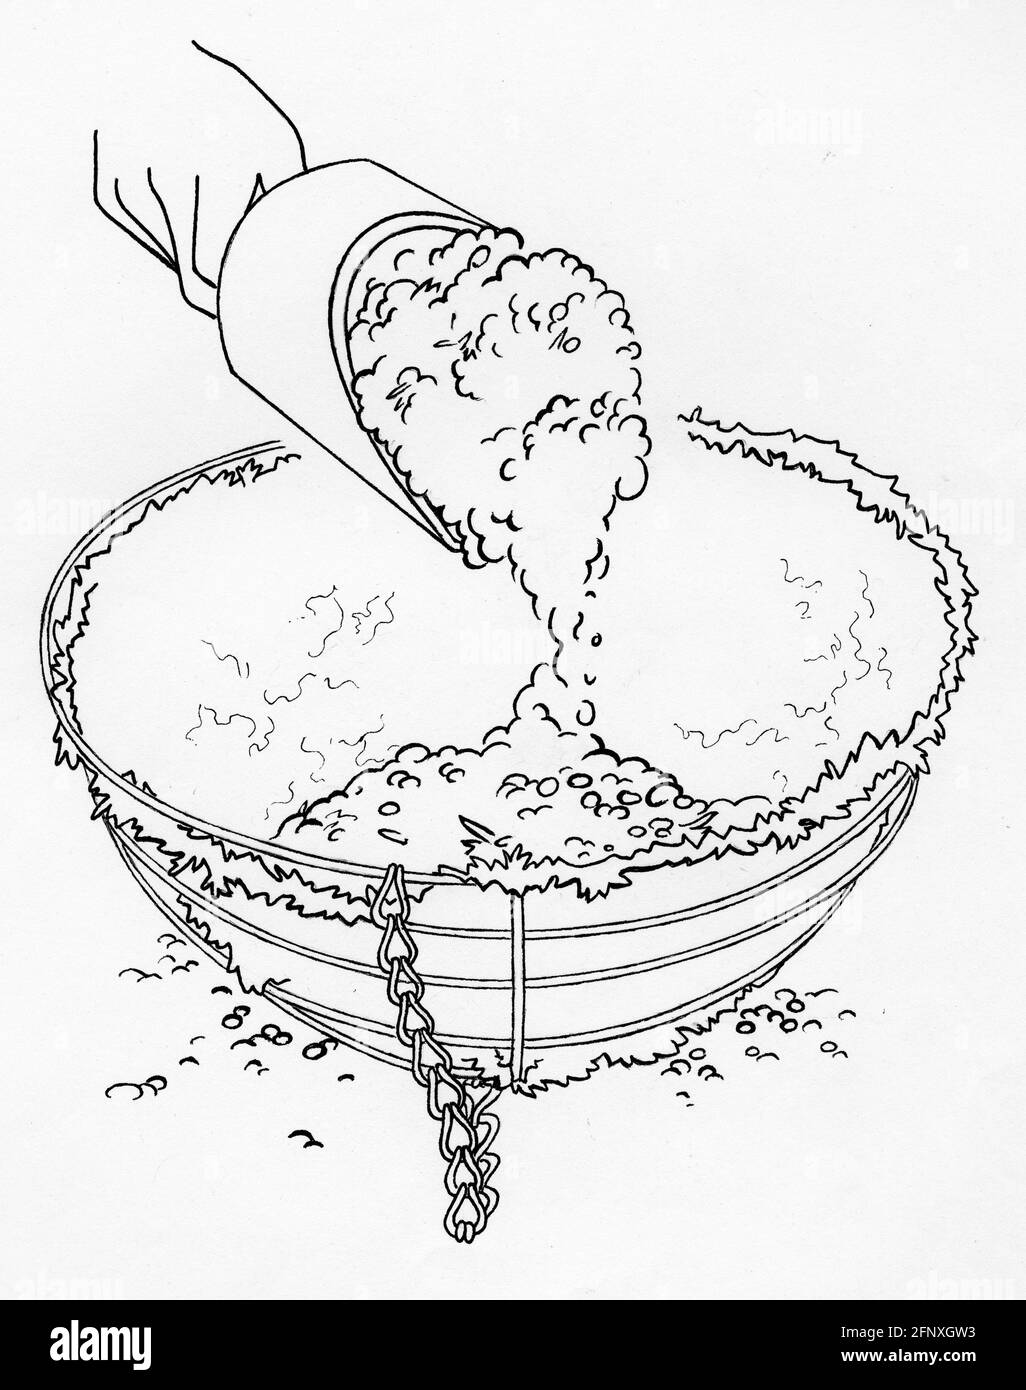 Un disegno di una mano che aggiunge la miscela di vasellatura ad un cestino appeso con fodera in muschio di sfagnum Foto Stock